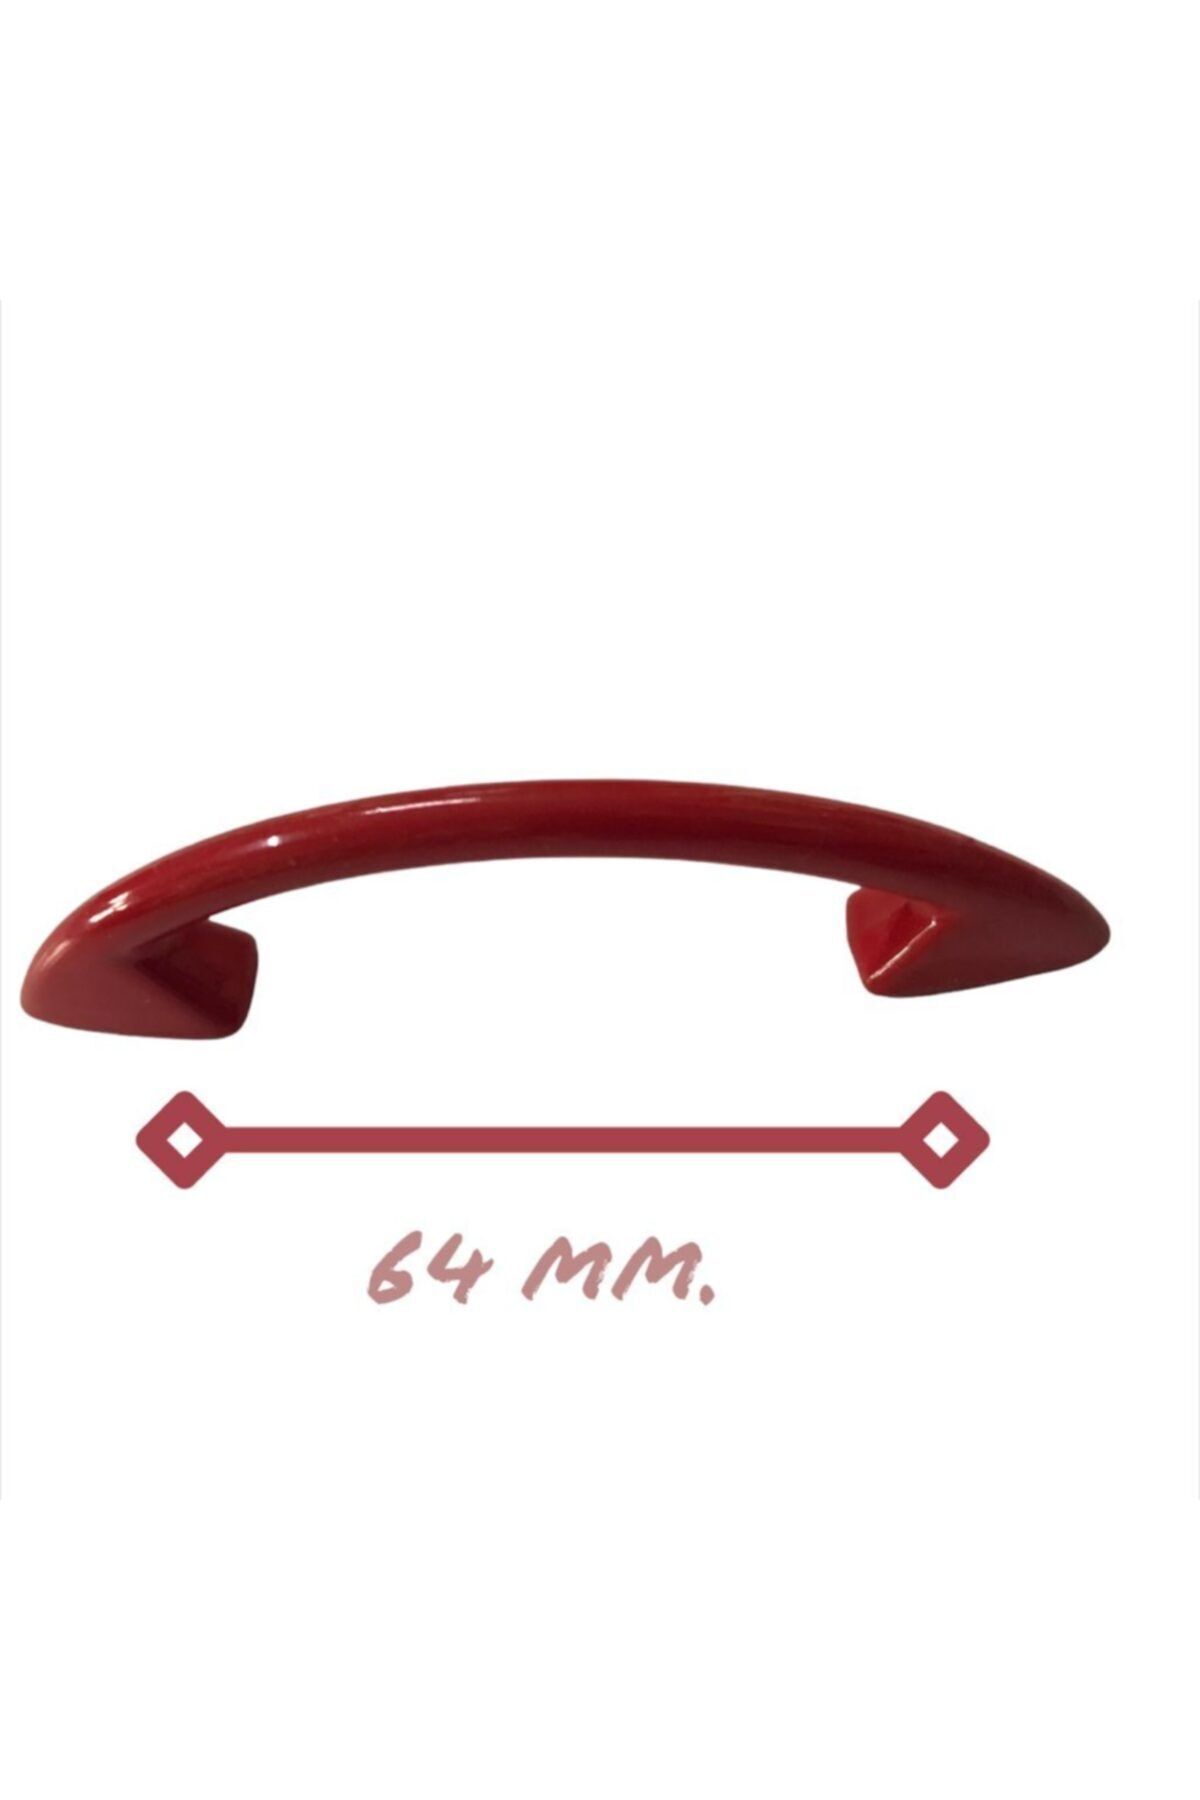 Özgül 64 Mm. Dekoratif Çekmece Mobilya Kulbu - Kırmızı (5 ADET)